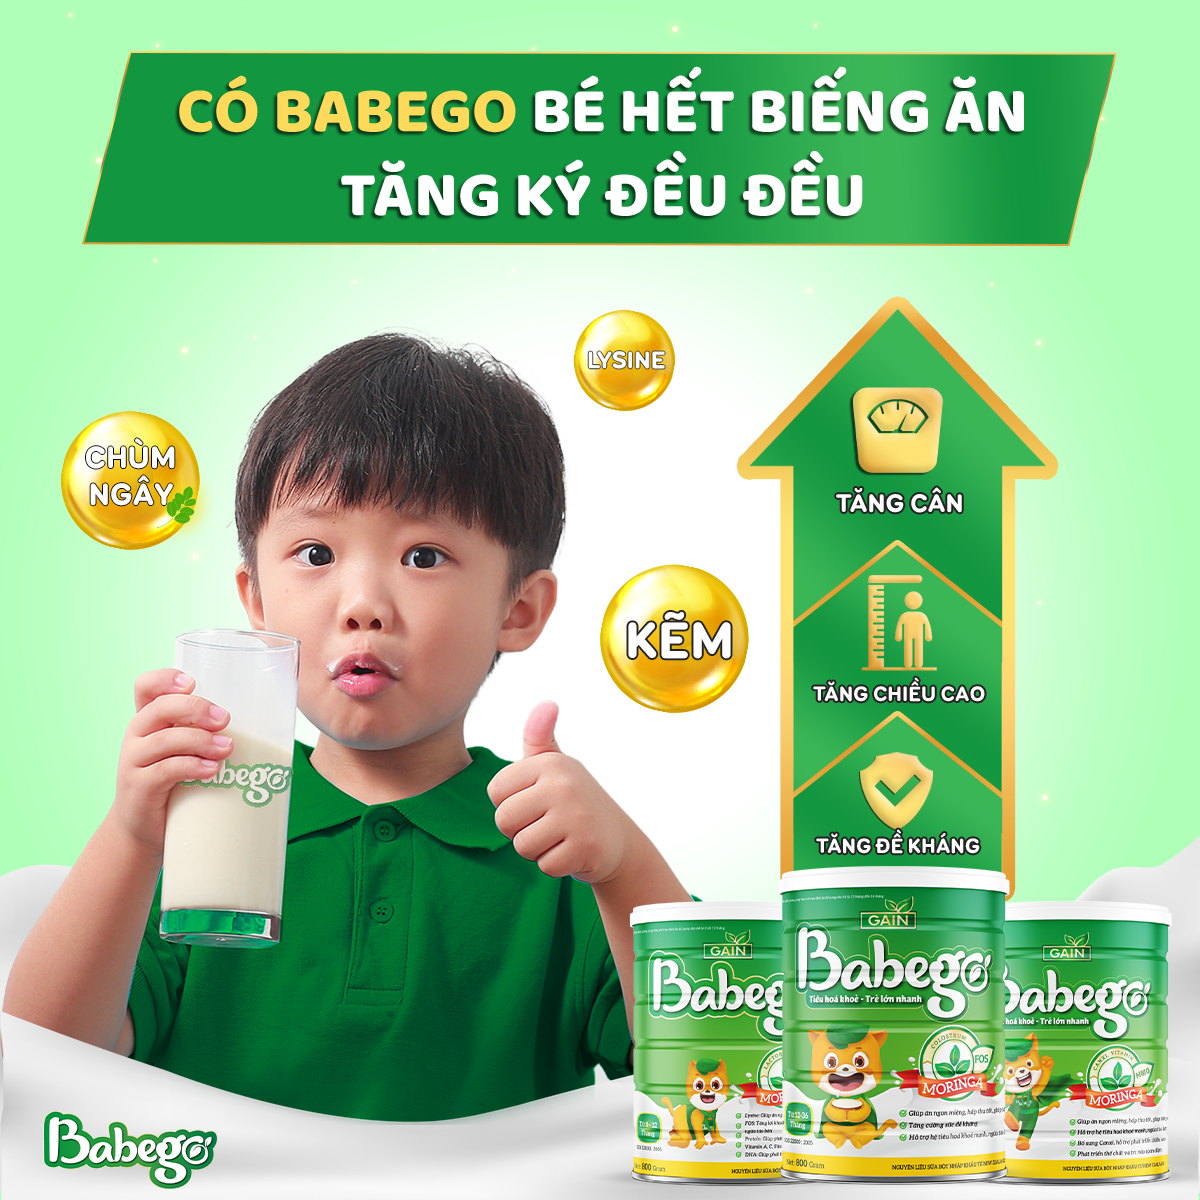 Sữa thảo dược chùm ngây Babego – Bí quyết giúp đẩy lùi biếng ăn, táo bón, chậm tăng cân